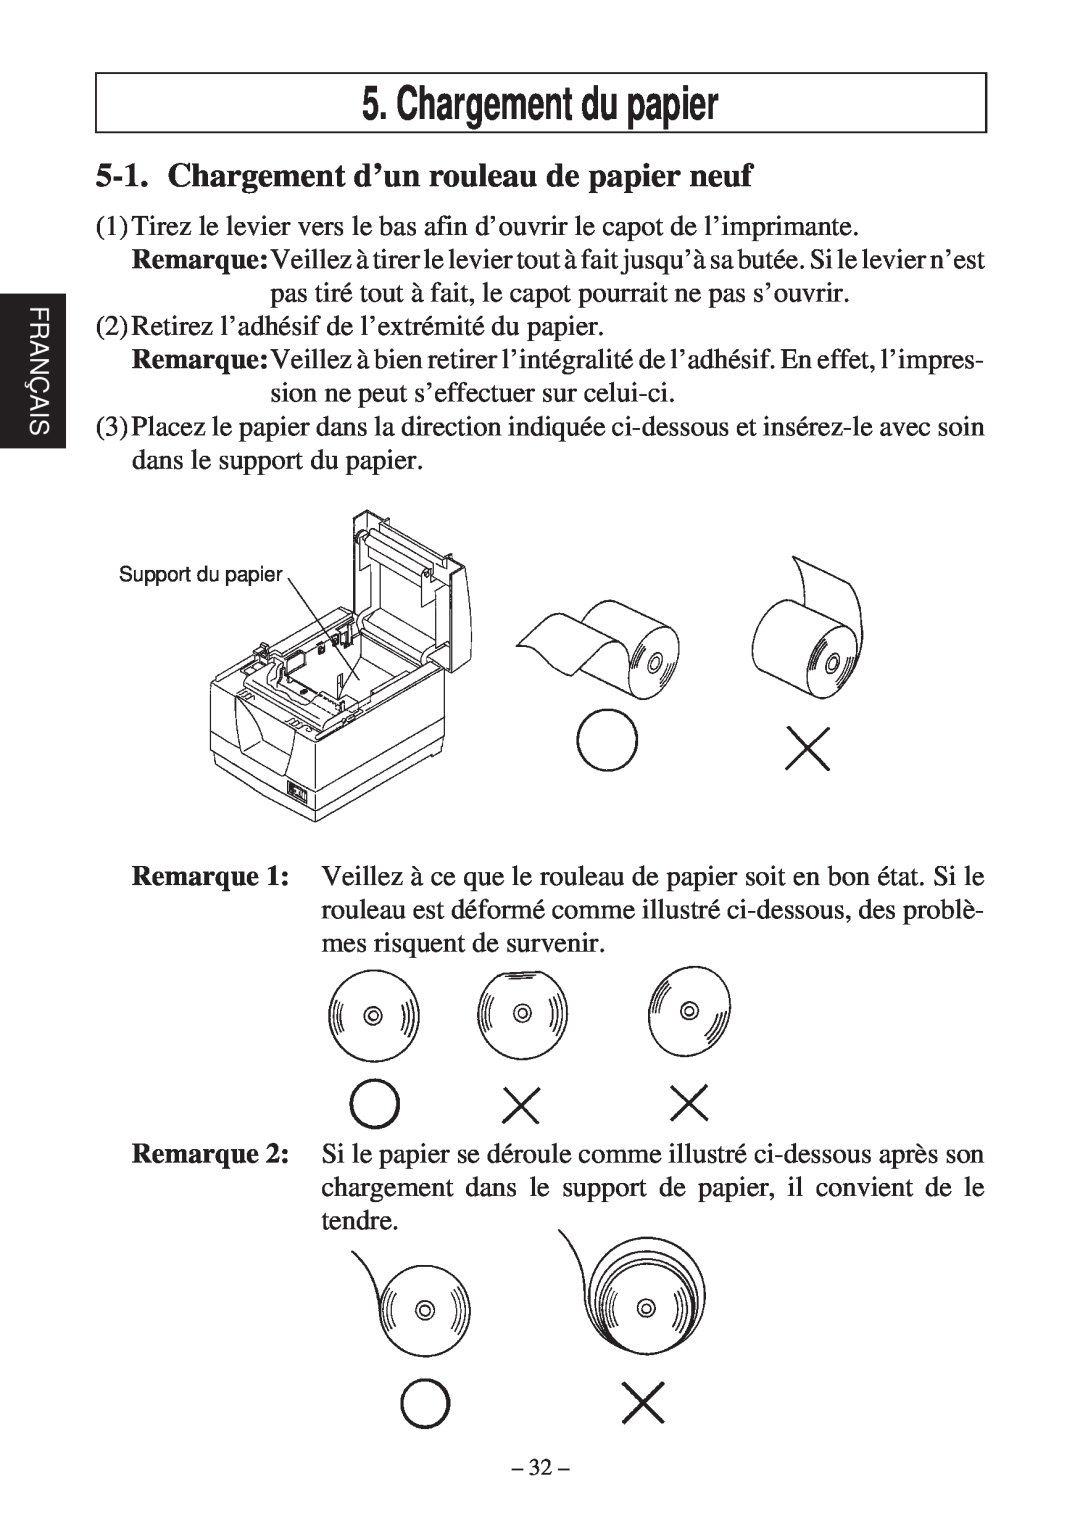 Star Micronics TSP2000 user manual Chargement du papier, Chargement d’un rouleau de papier neuf 